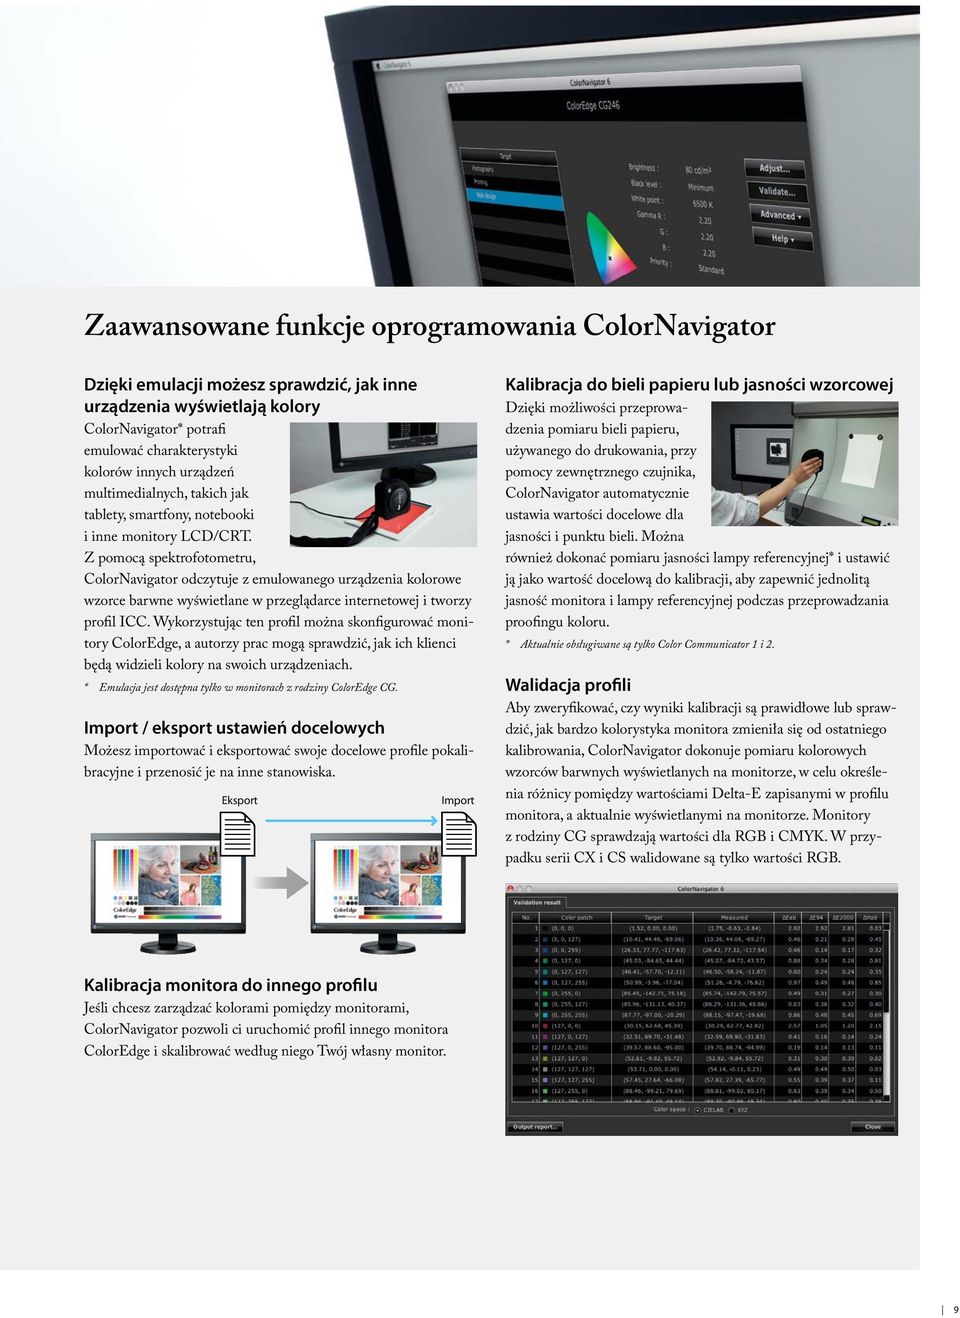 Z pomocą spektrofotometru, ColorNavigator odczytuje z emulowanego urządzenia kolorowe wzorce barwne wyświetlane w przeglądarce internetowej i tworzy profil ICC.